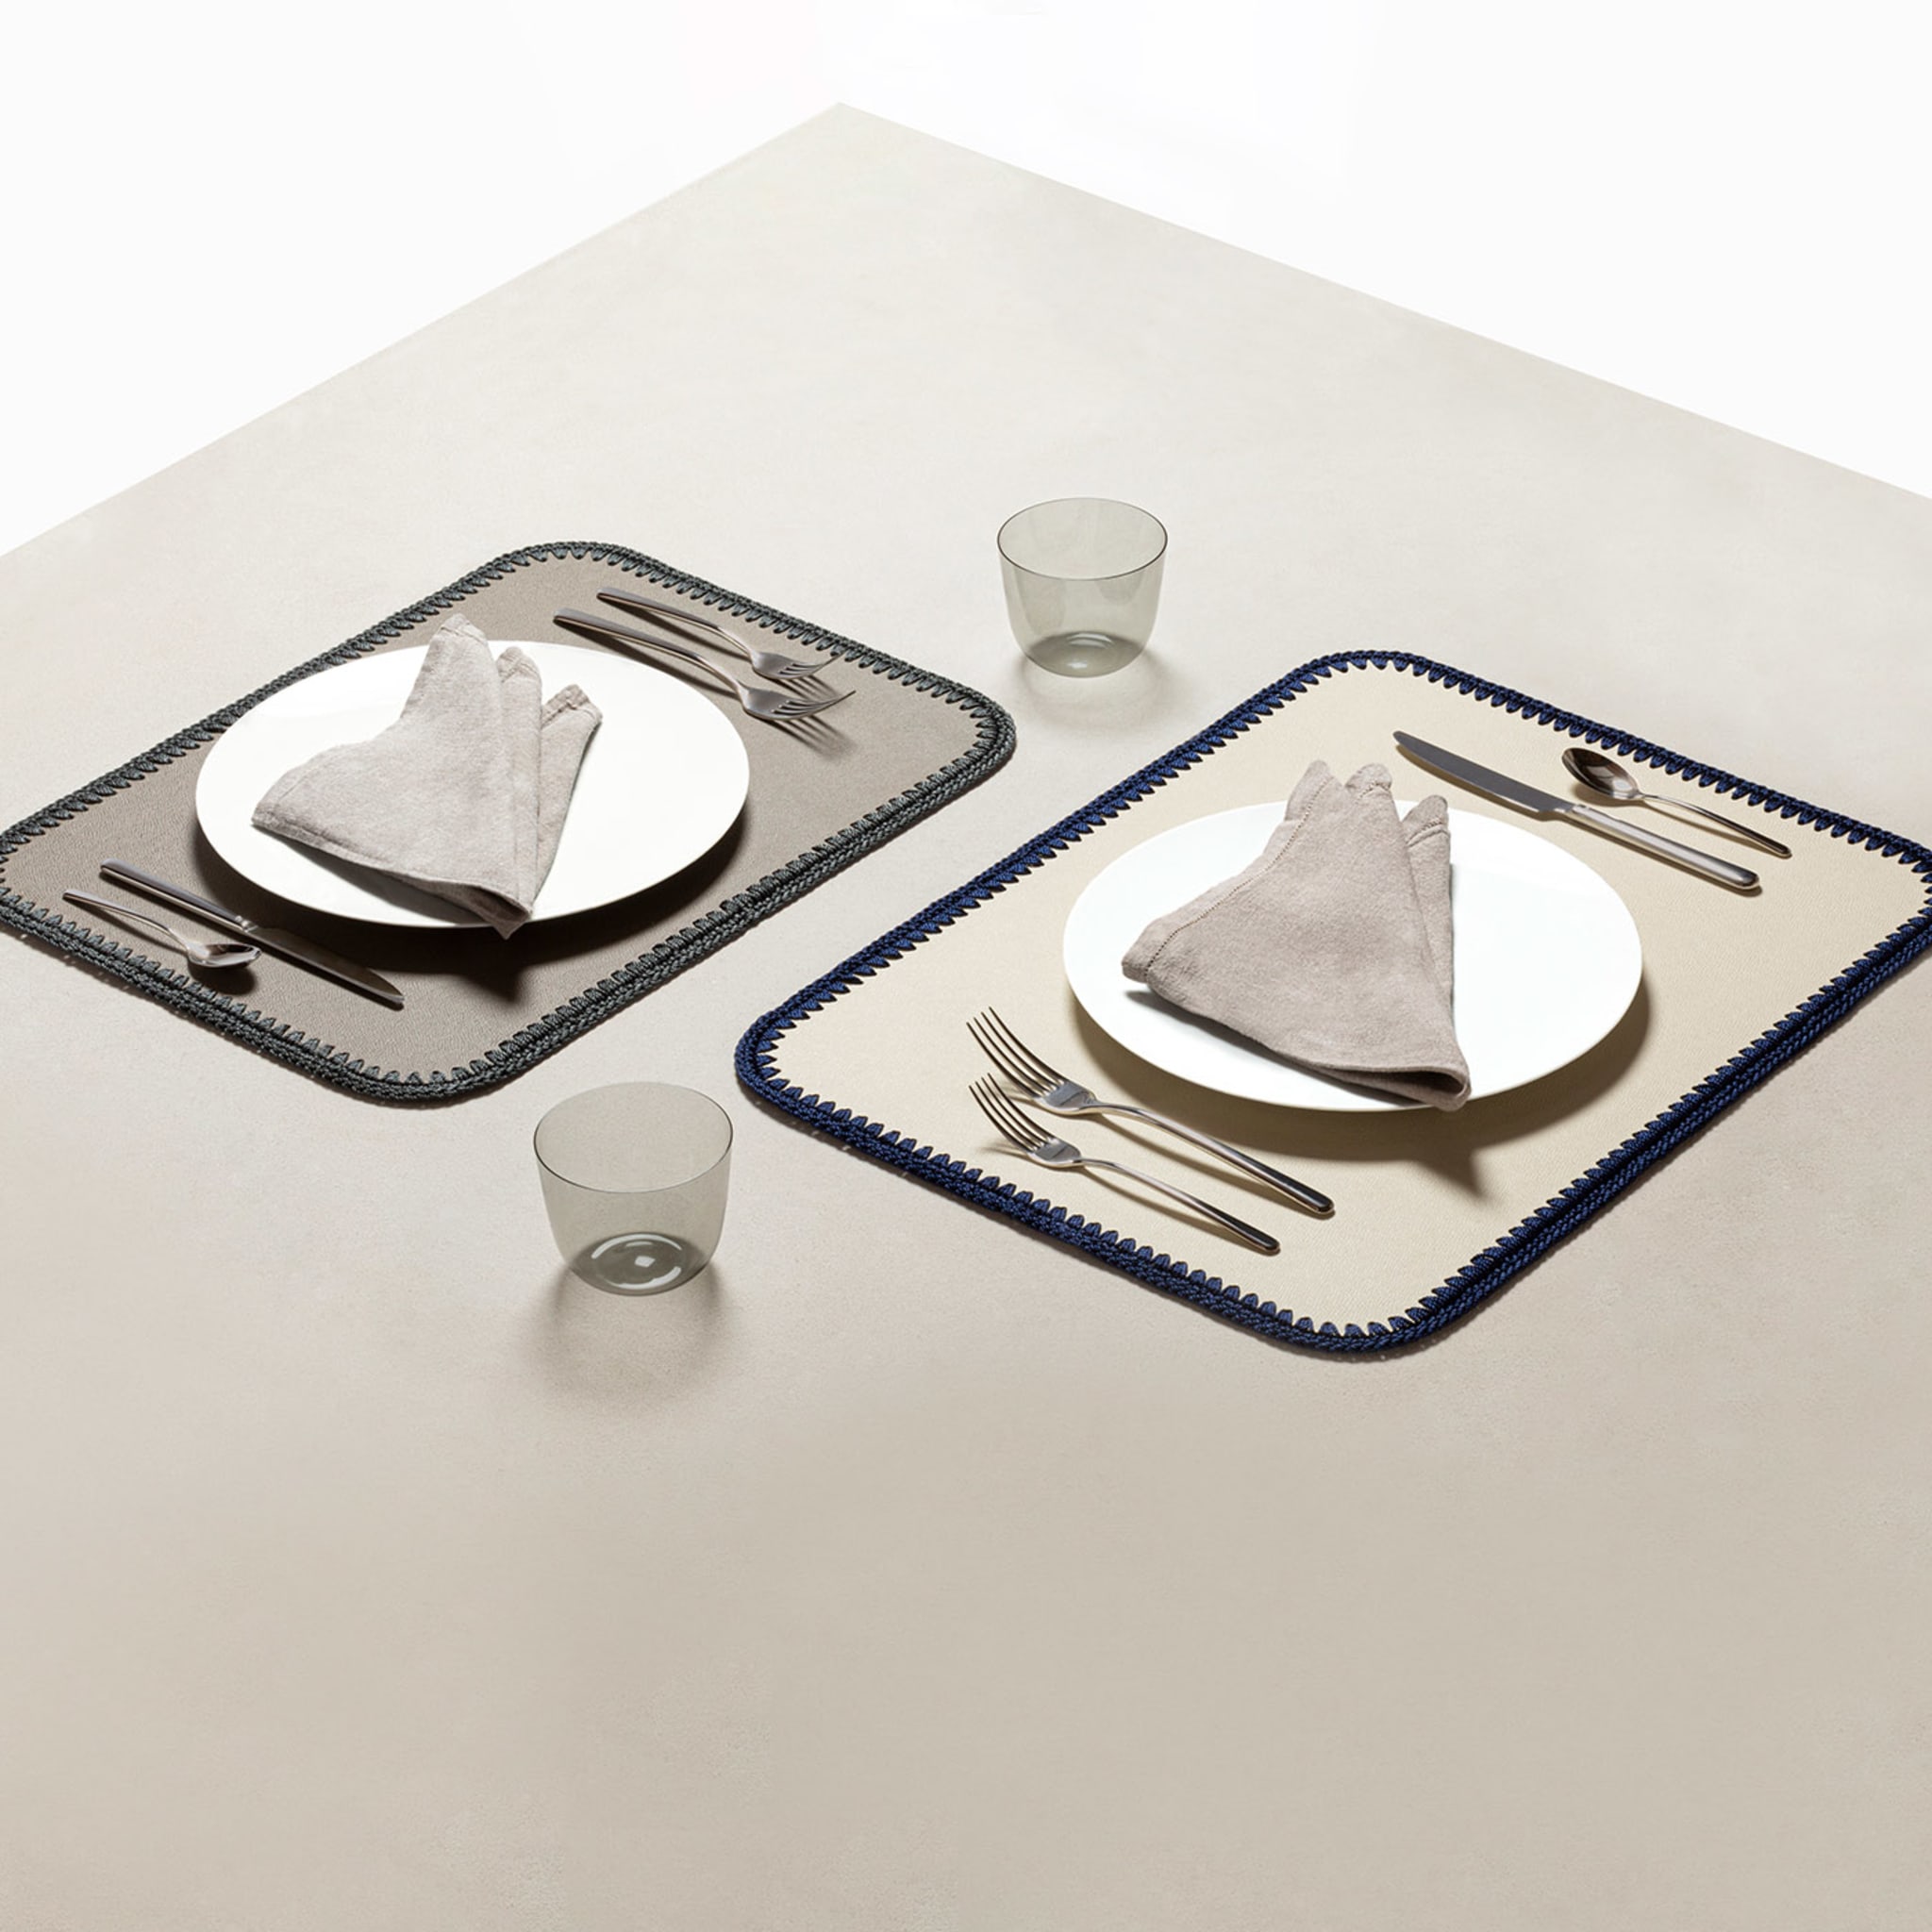 Rochelle - Sets de table rectangulaires en cuir et crochet - Blanc et bleu - Vue alternative 4